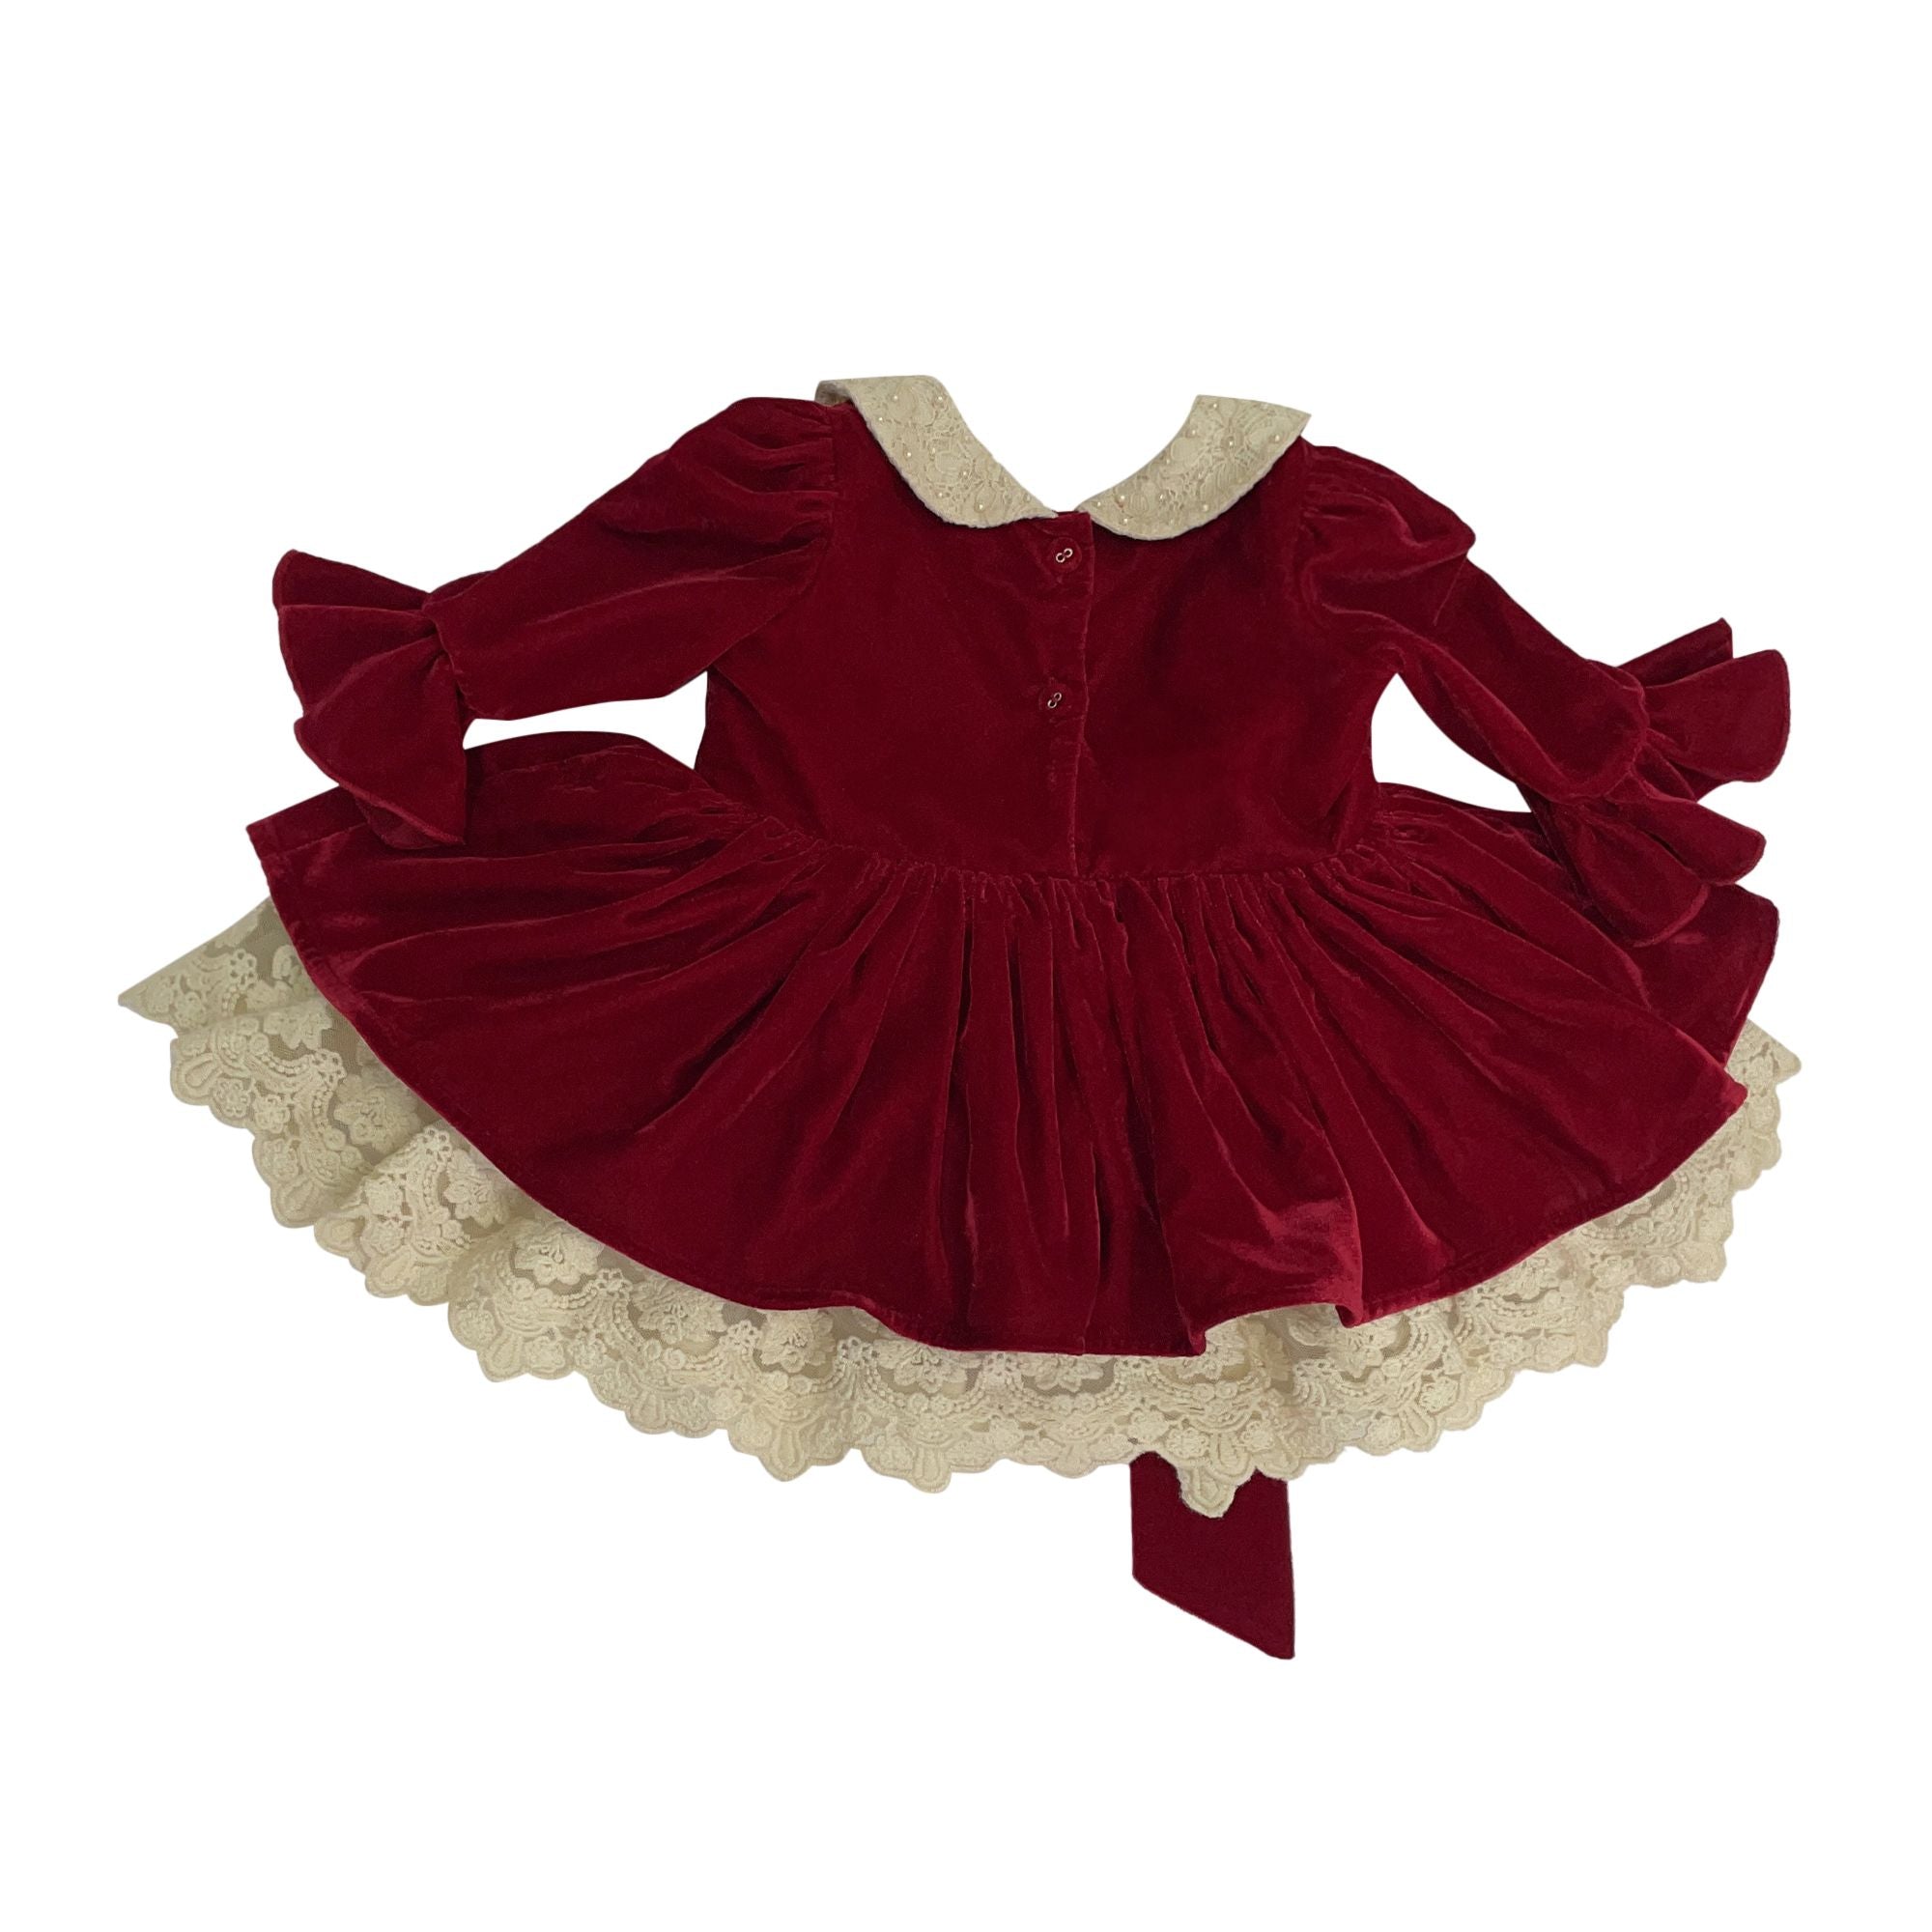 The Vintage Velvet Dress (Cherry Red)